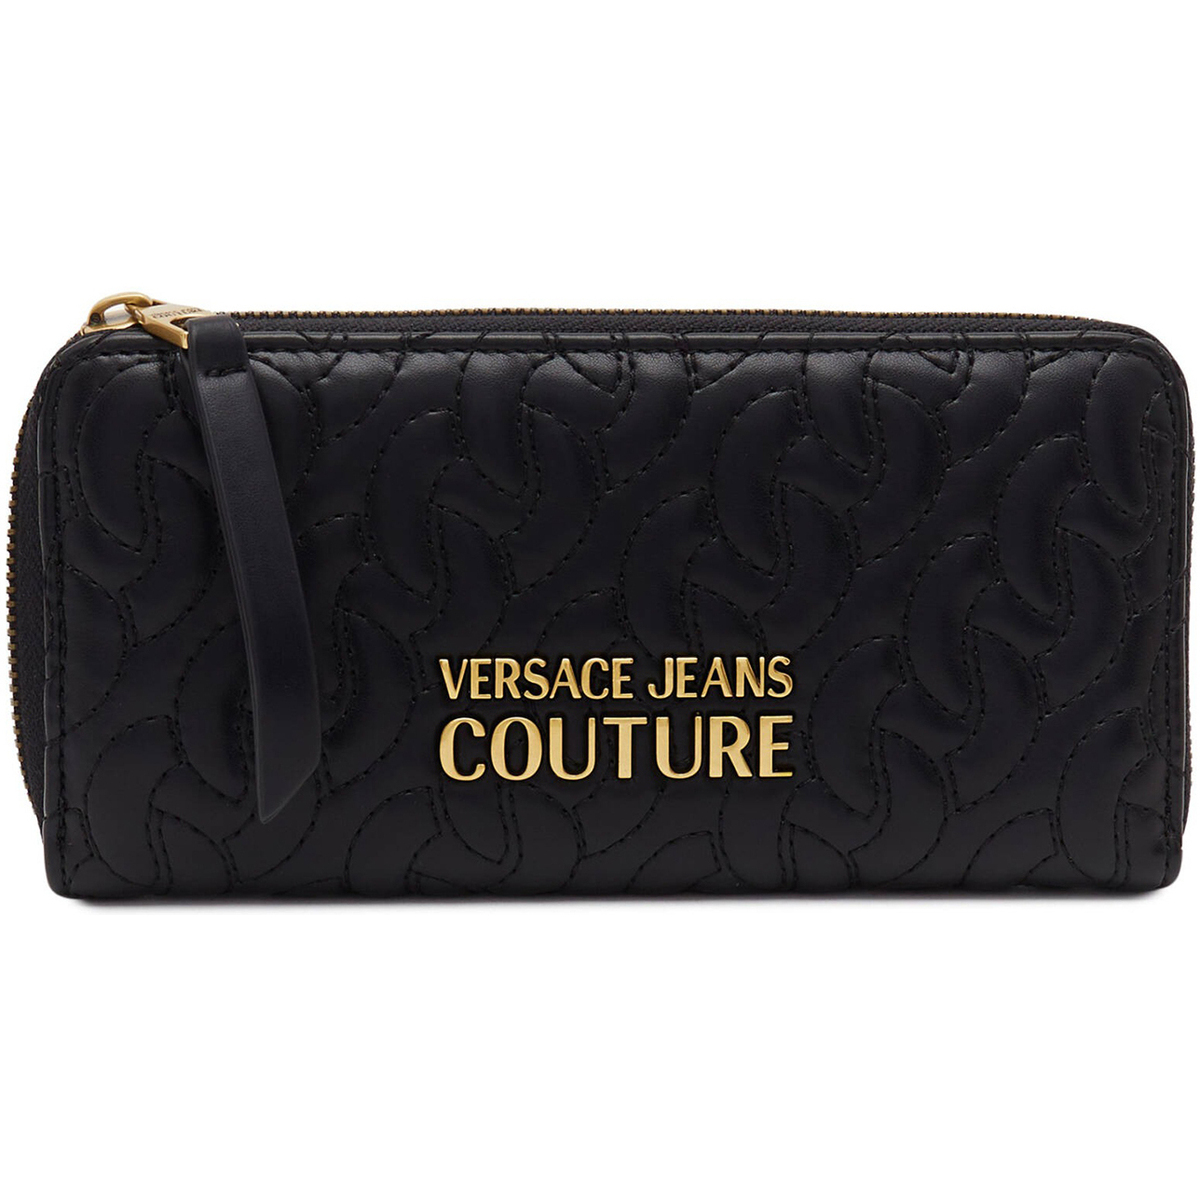 Versace Jeans Couture Noir 75va5pa1zs803-899 Y75q24pk